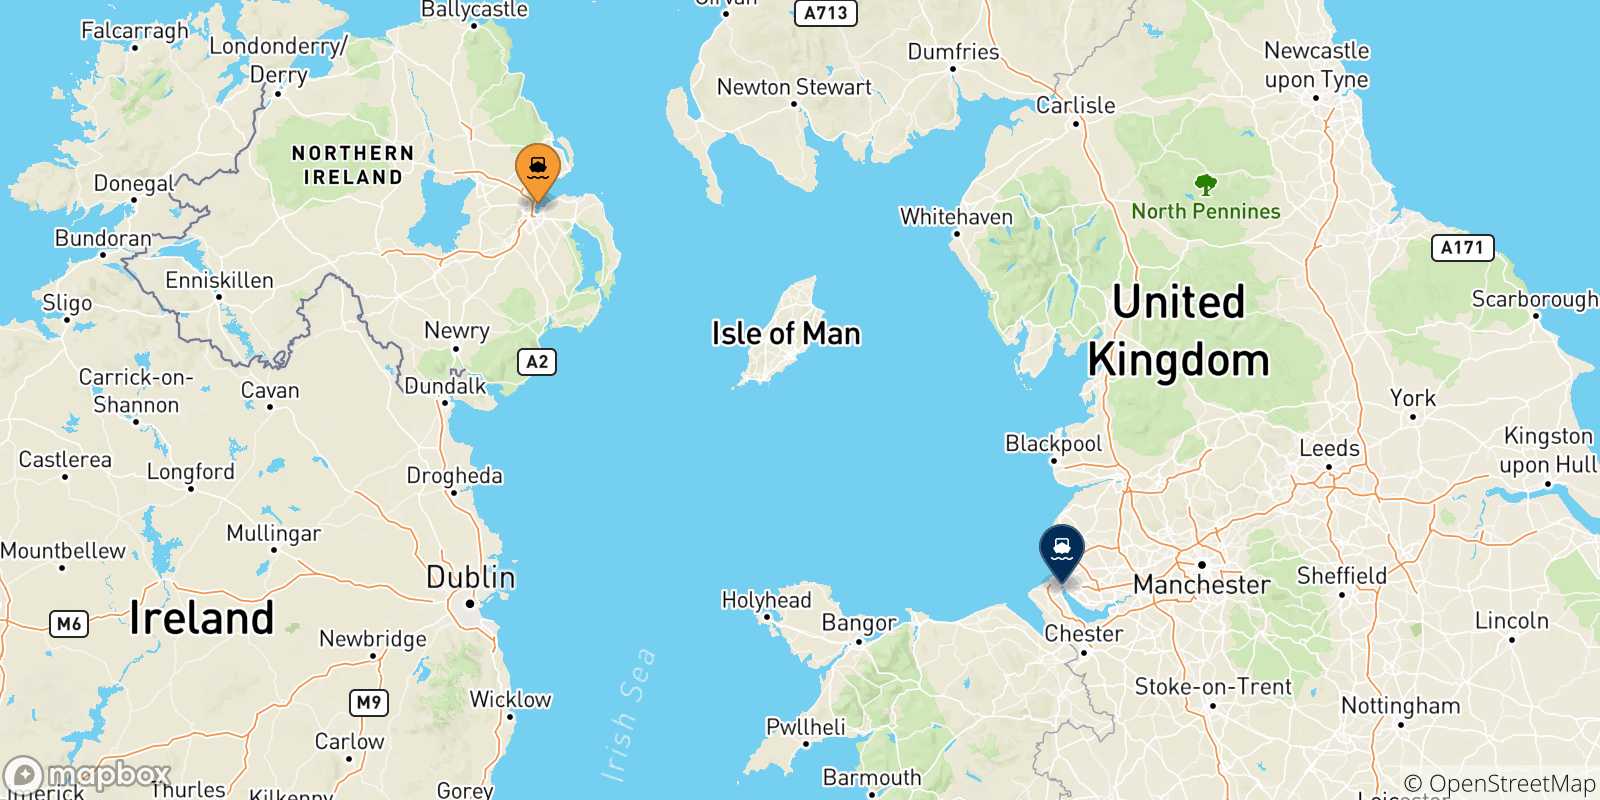 Mappa delle possibili rotte tra il Regno Unito e l'Inghilterra